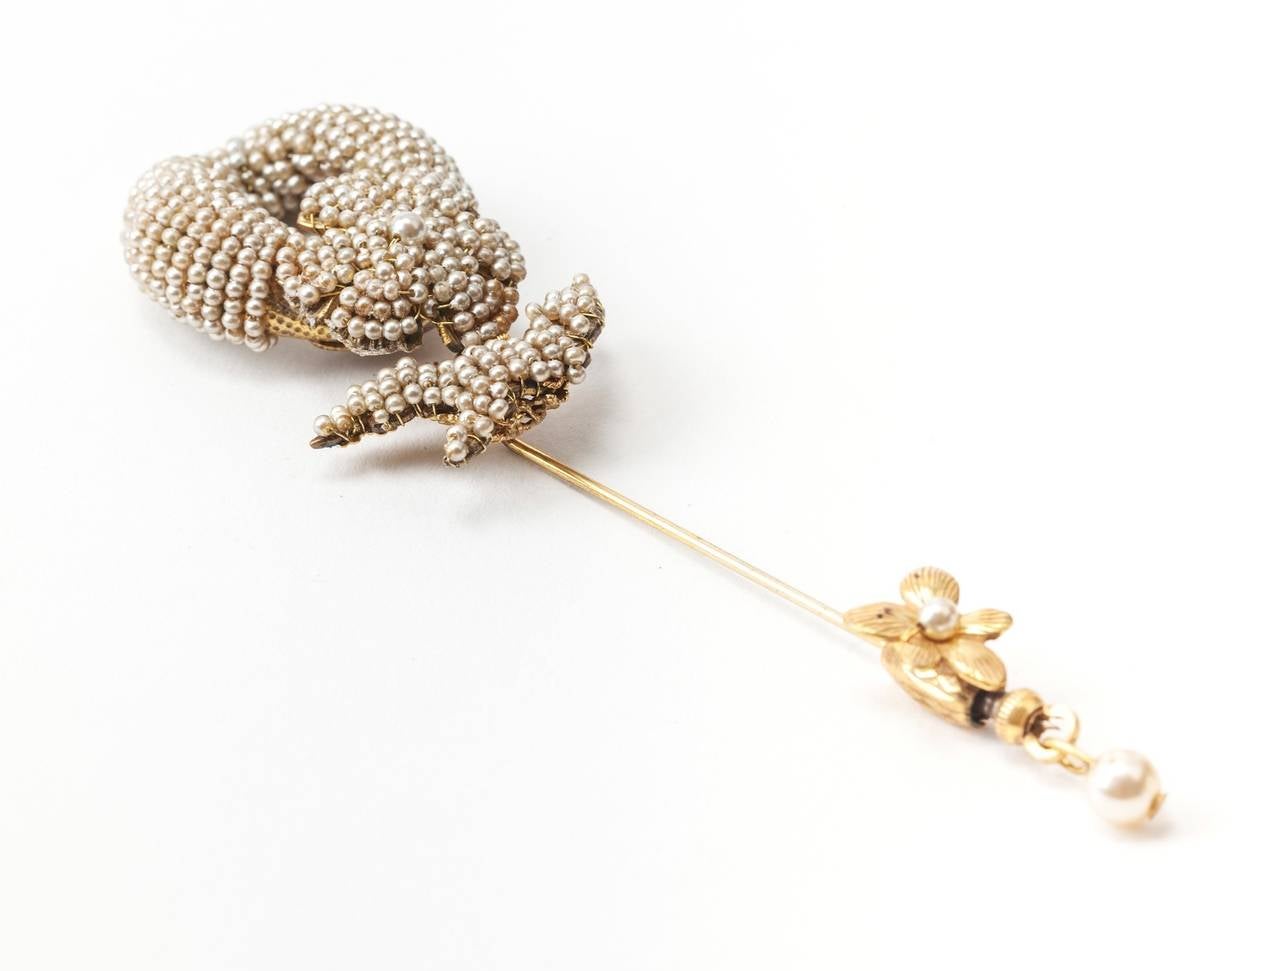 La broche en deux parties de Miriam Haskell. Rare broche épingle à nourrice d'une longueur inhabituelle, en métal doré russe, avec des broderies de perles complexes.
L'anneau ovale et les filigranes de forme florale sont cousus à la main avec de